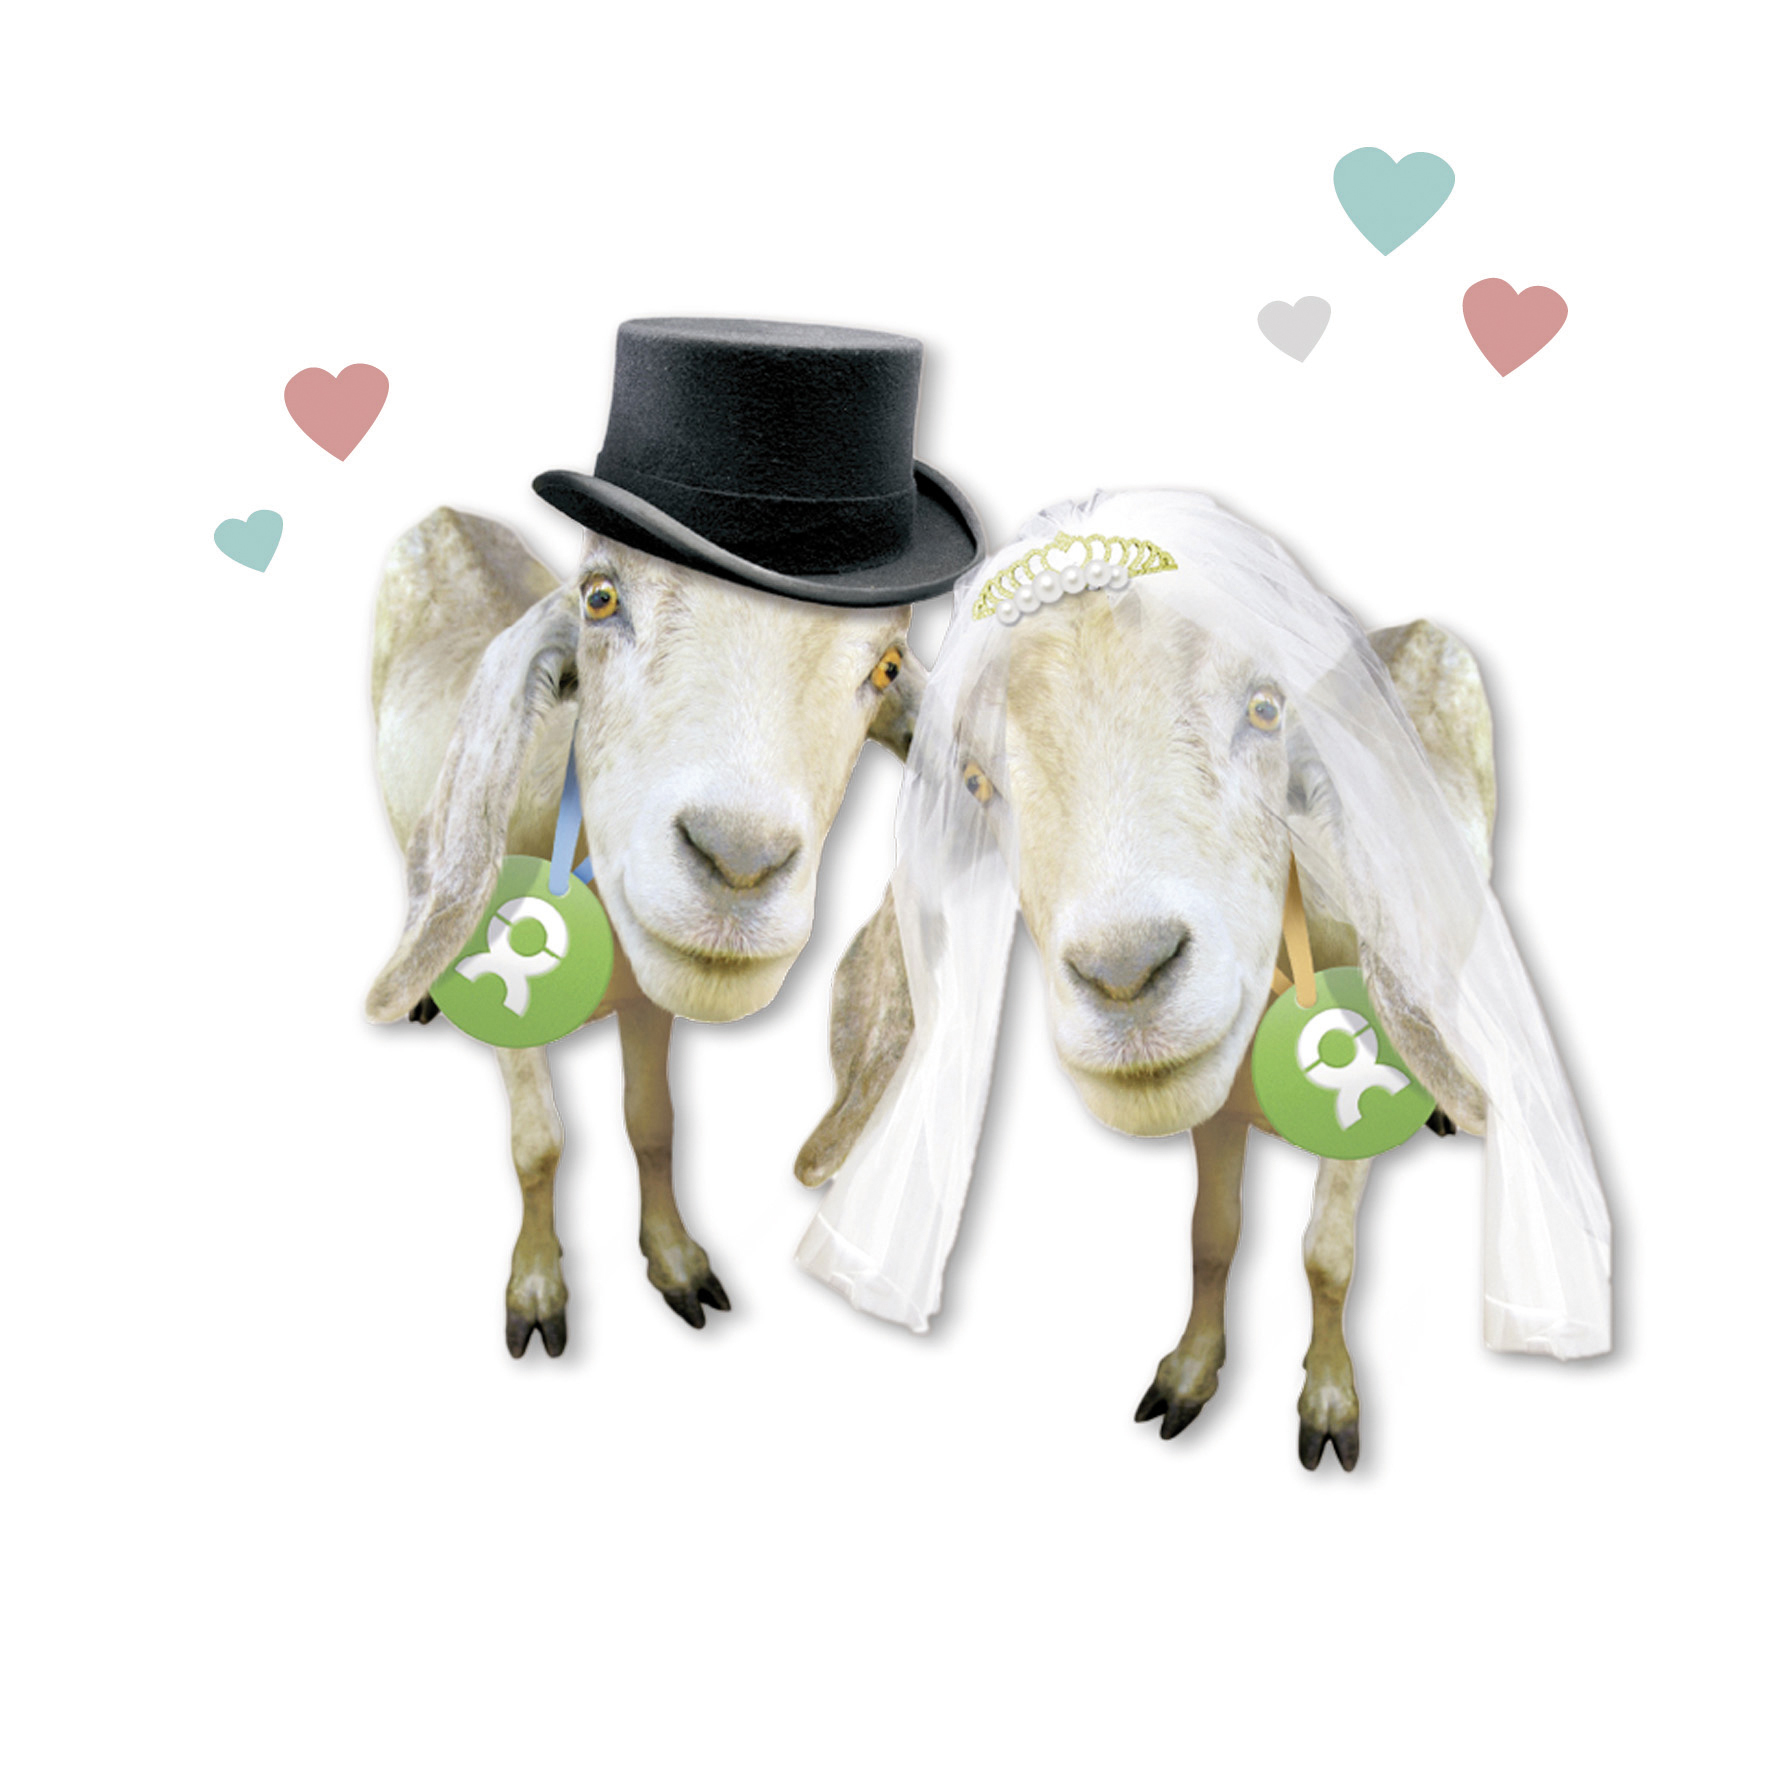 Beispiel Geschenk Spende Hochzeit: Grafik von zwei Ziegen mit Schleier und Zylinder als Hochzeitspaar, umgeben von Herzen